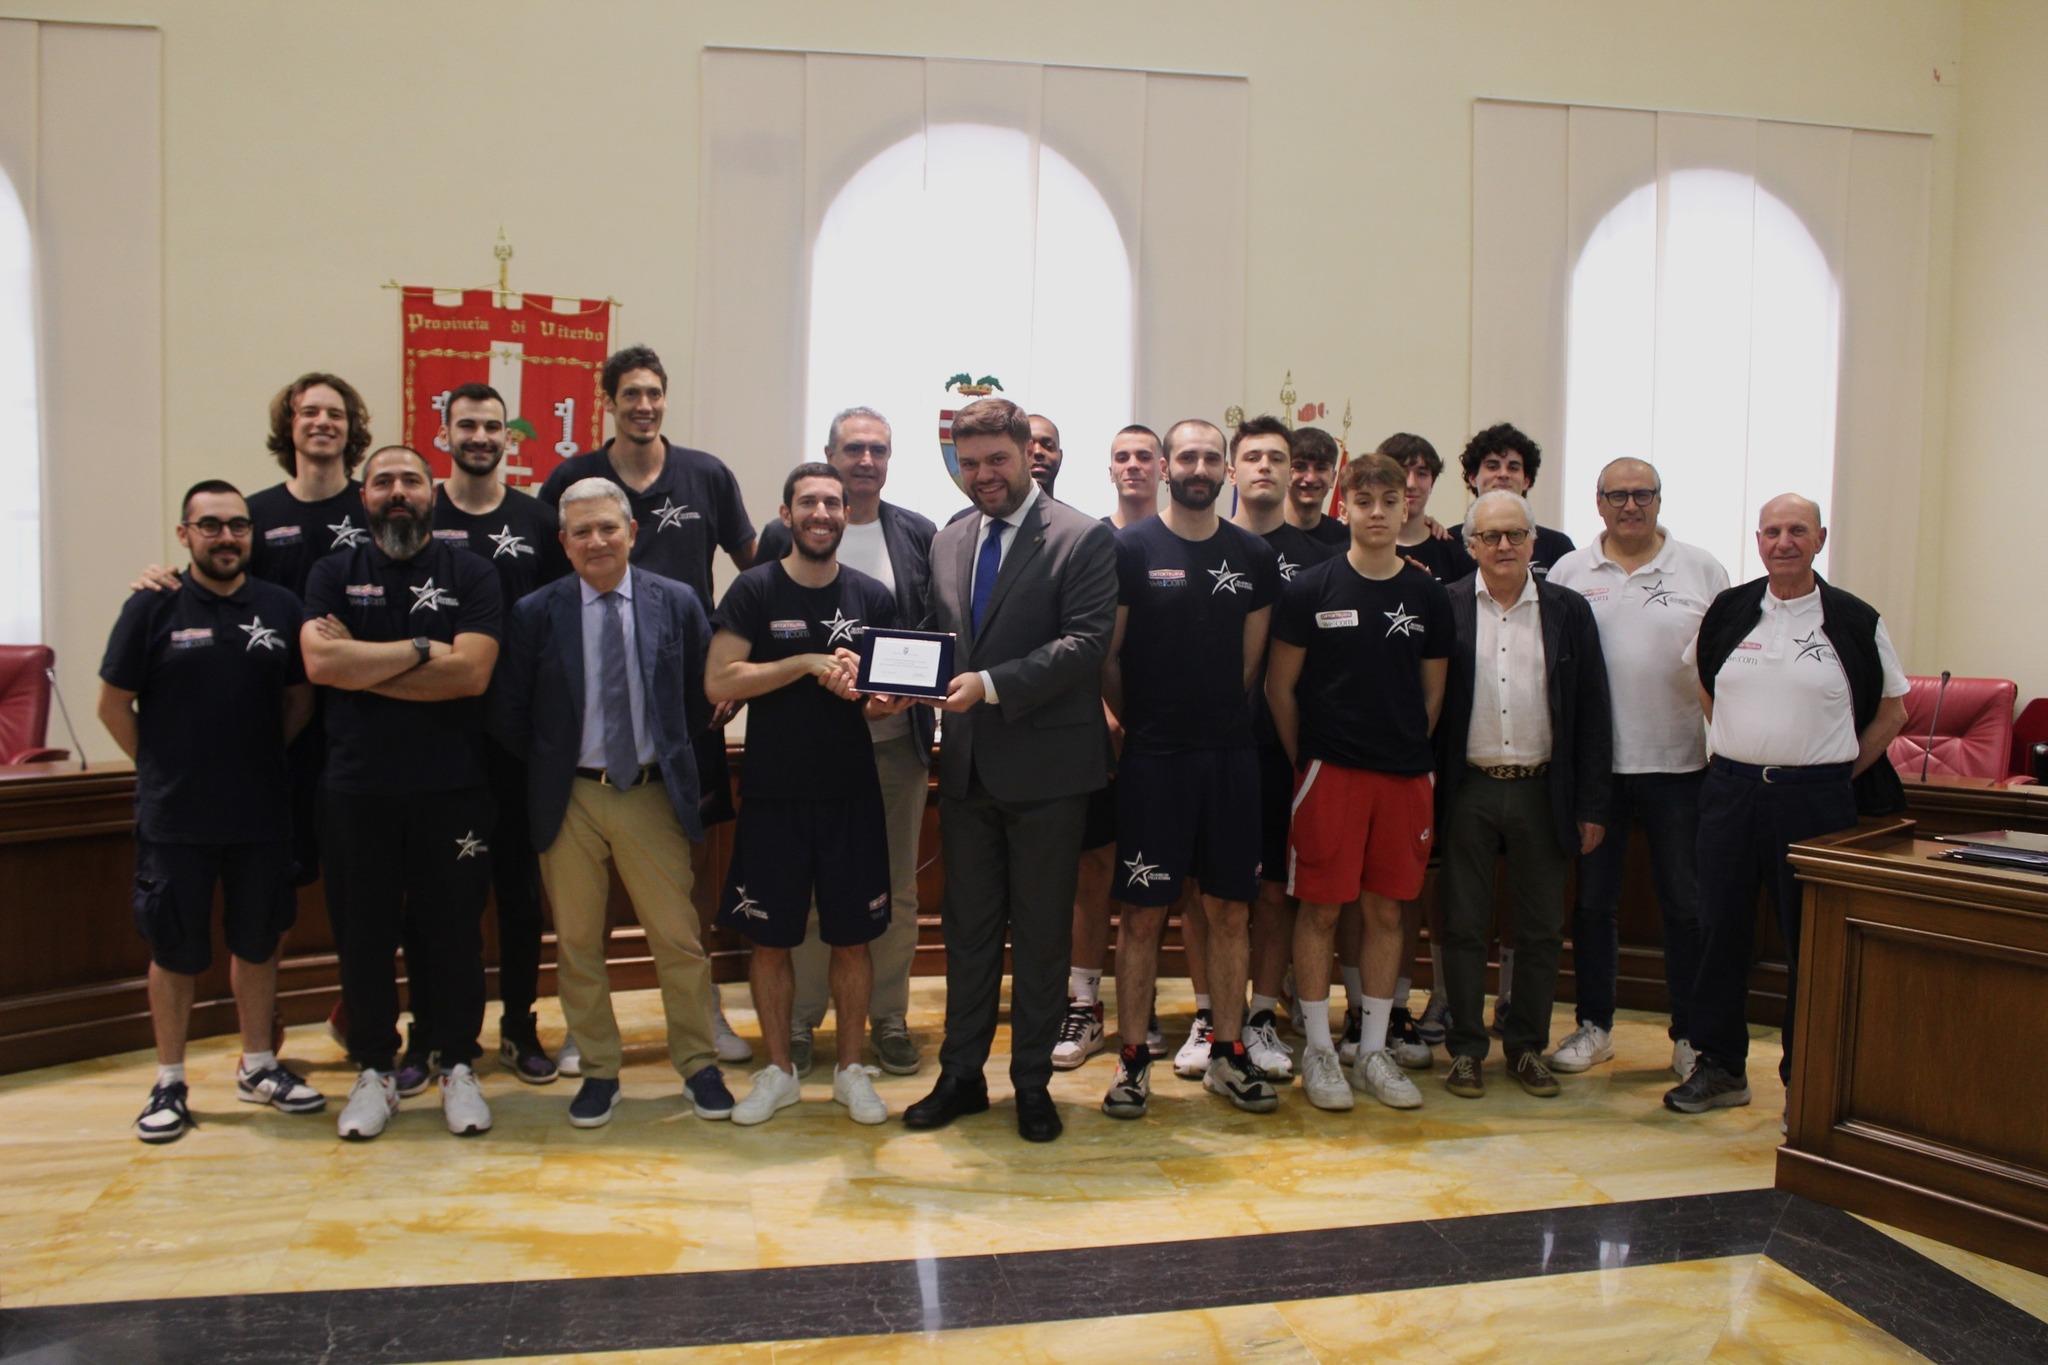 - Questa mattina il Presidente Alessandro Romoli ha ricevuto a Palazzo Gentili la visita della Stella Azzurra Viterbo, la squadra di basket che ha vinto i play off raggiungendo la promozione in serie B